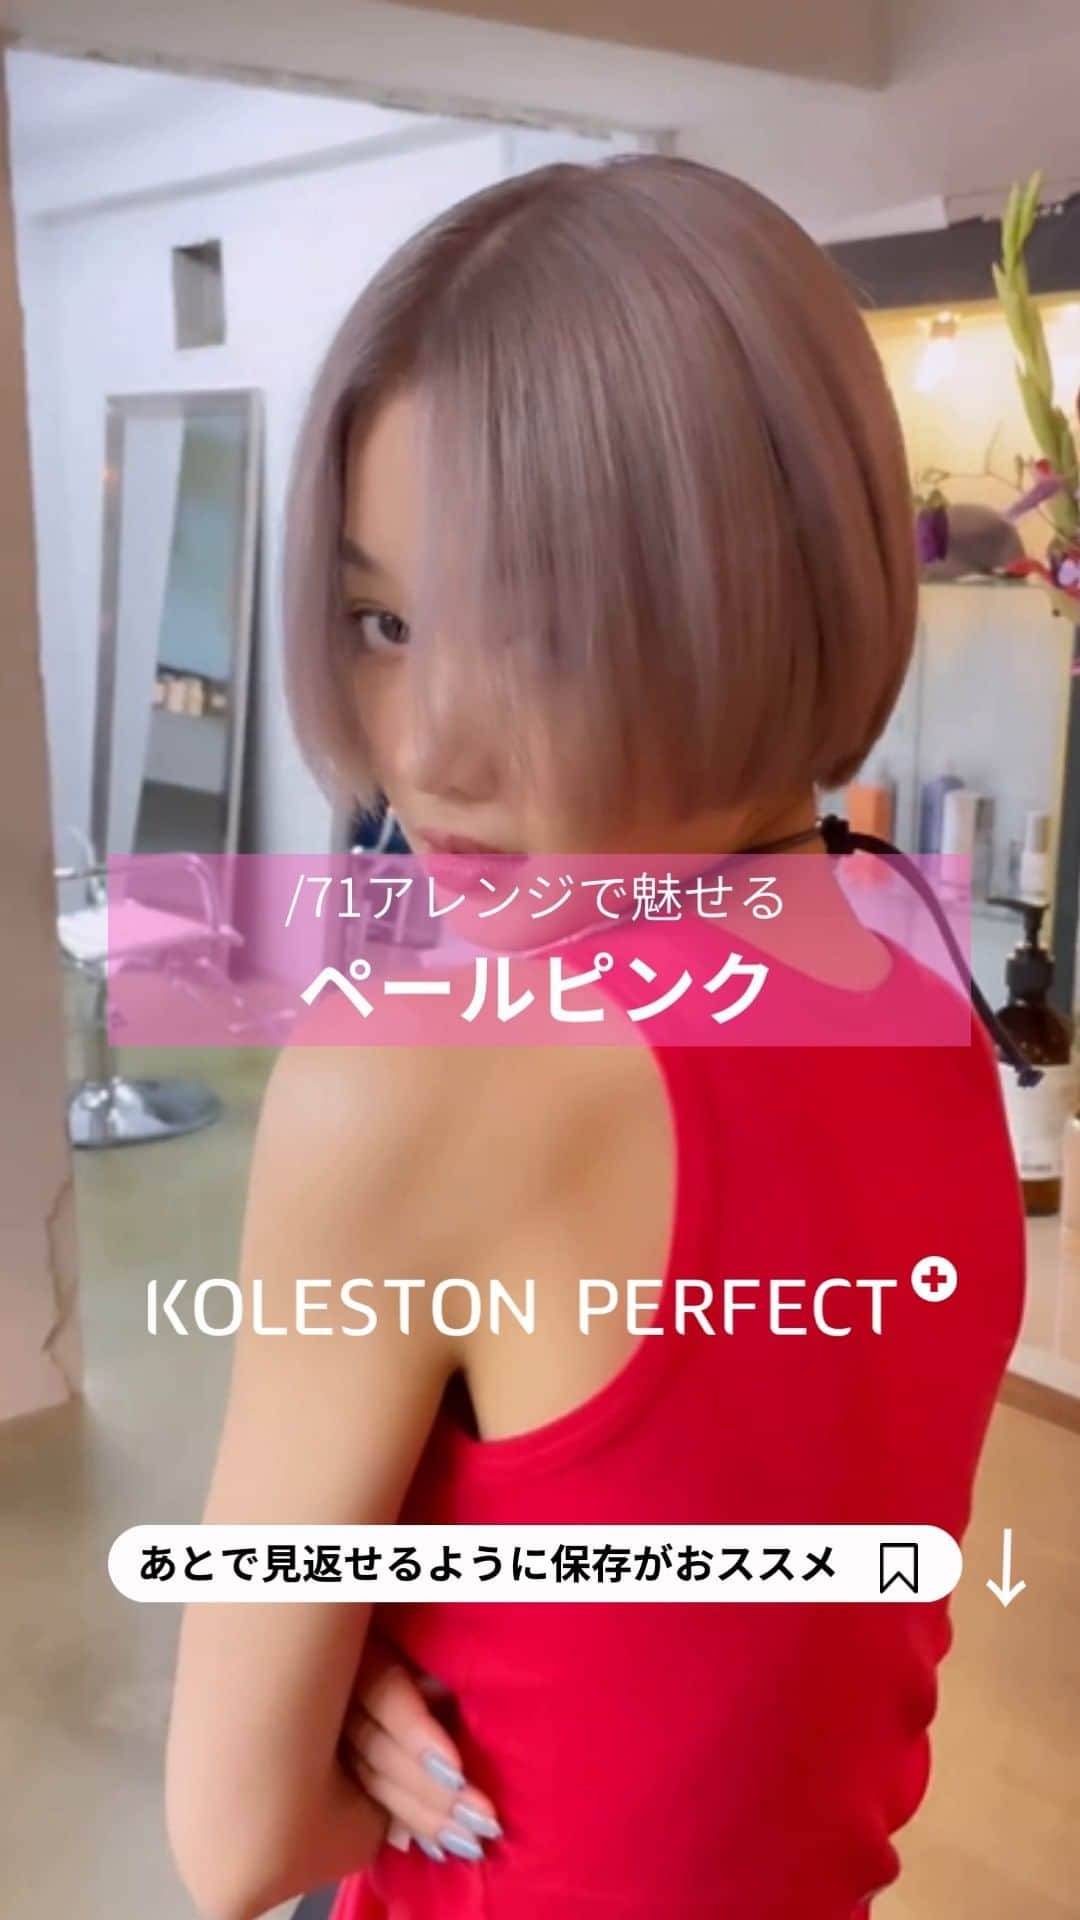 Wella Professionals Japanのインスタグラム：「コレストン新色、こんな使い方もアリ👍   先日発売となった、コレストン新色リュクスカラーコレクション✨  脱白髪染め、白髪ぼかしに最適なカラーだって聞いたけど… 他にも良い使い方はないのか？？？ そう考えるのが美容師さんですね～😆   リュクスカラーコレクションのインフルエンサーを務めていただいている WELLA Passionsitas  KONの清原 崇弘さん（@kon__kiyo)がコレストン新色/71 リュクスアッシュを/00（ネイチャーコントロール）と/1（グレイ）のアレンジに”ちょい足し”して素敵なハイトーンカラースタイルをポストしてくださいましたのでご紹介します 🙌  /71の絶妙な色味だからこそ表現できるペールピンクの仕上がり✨ ぜひ参考にしてください😘   ★☆★☆★☆★☆★☆★☆★☆★☆★☆★☆★☆  KOLESTON PERFECT+ の新色を配合して、また新しいレシピが増えました♡  【recipe】 18レベルまでブリーチでライトニング後  ( 10/00 : 10/1 ) + 9/71 = ( 1 : 1 ) + 20%  2剤は根元6％ / 毛先2%  ★☆★☆★☆★☆★☆★☆★☆★☆★☆★☆★☆  【投稿大募集中】 WELLAの薬剤を使用して作った投稿をお待ちしています。 投稿内に@wellapro_japanのメンションと使用された薬剤とレシピをご記入ください。 素敵な投稿をしていただいた方にはこちらからご連絡をさせていただき、公式アカウントにてご紹介させていただきます 🙌 たくさんの投稿お待ちしています。 （薬剤をアレンジされる場合は同一ブランドのみでお願いいたします）  #ウエラ #コレストン #リュクスカラーコレクション #71リュクスアッシュ  #1グレイ  #00ネイチャーコントロール  #ヘアカラー #ヘアスタイル #カラー #ハイトーンカラー #サロンカラー #デザインカラー #美容師 #美容室 #美容院 #ヘアサロン　 #髪色変えたい #ヘアカラー好きとつながりたい #イメージチェンジ #イメチェン #hair #haircolor #hairstyle」